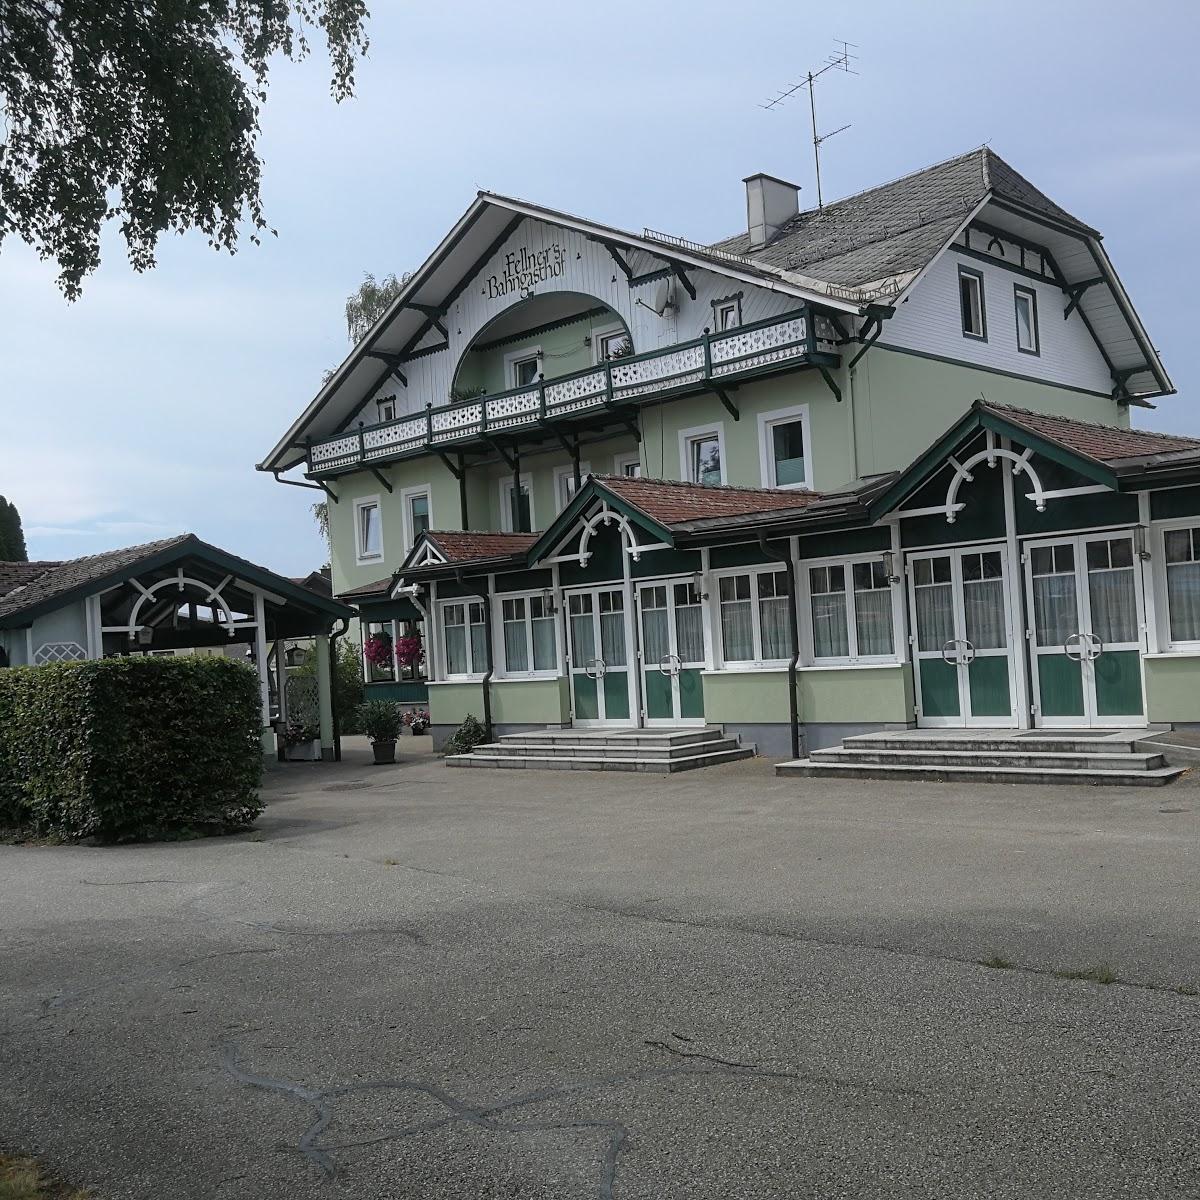 Restaurant "Bahngasthof Fellner" in Vöcklamarkt